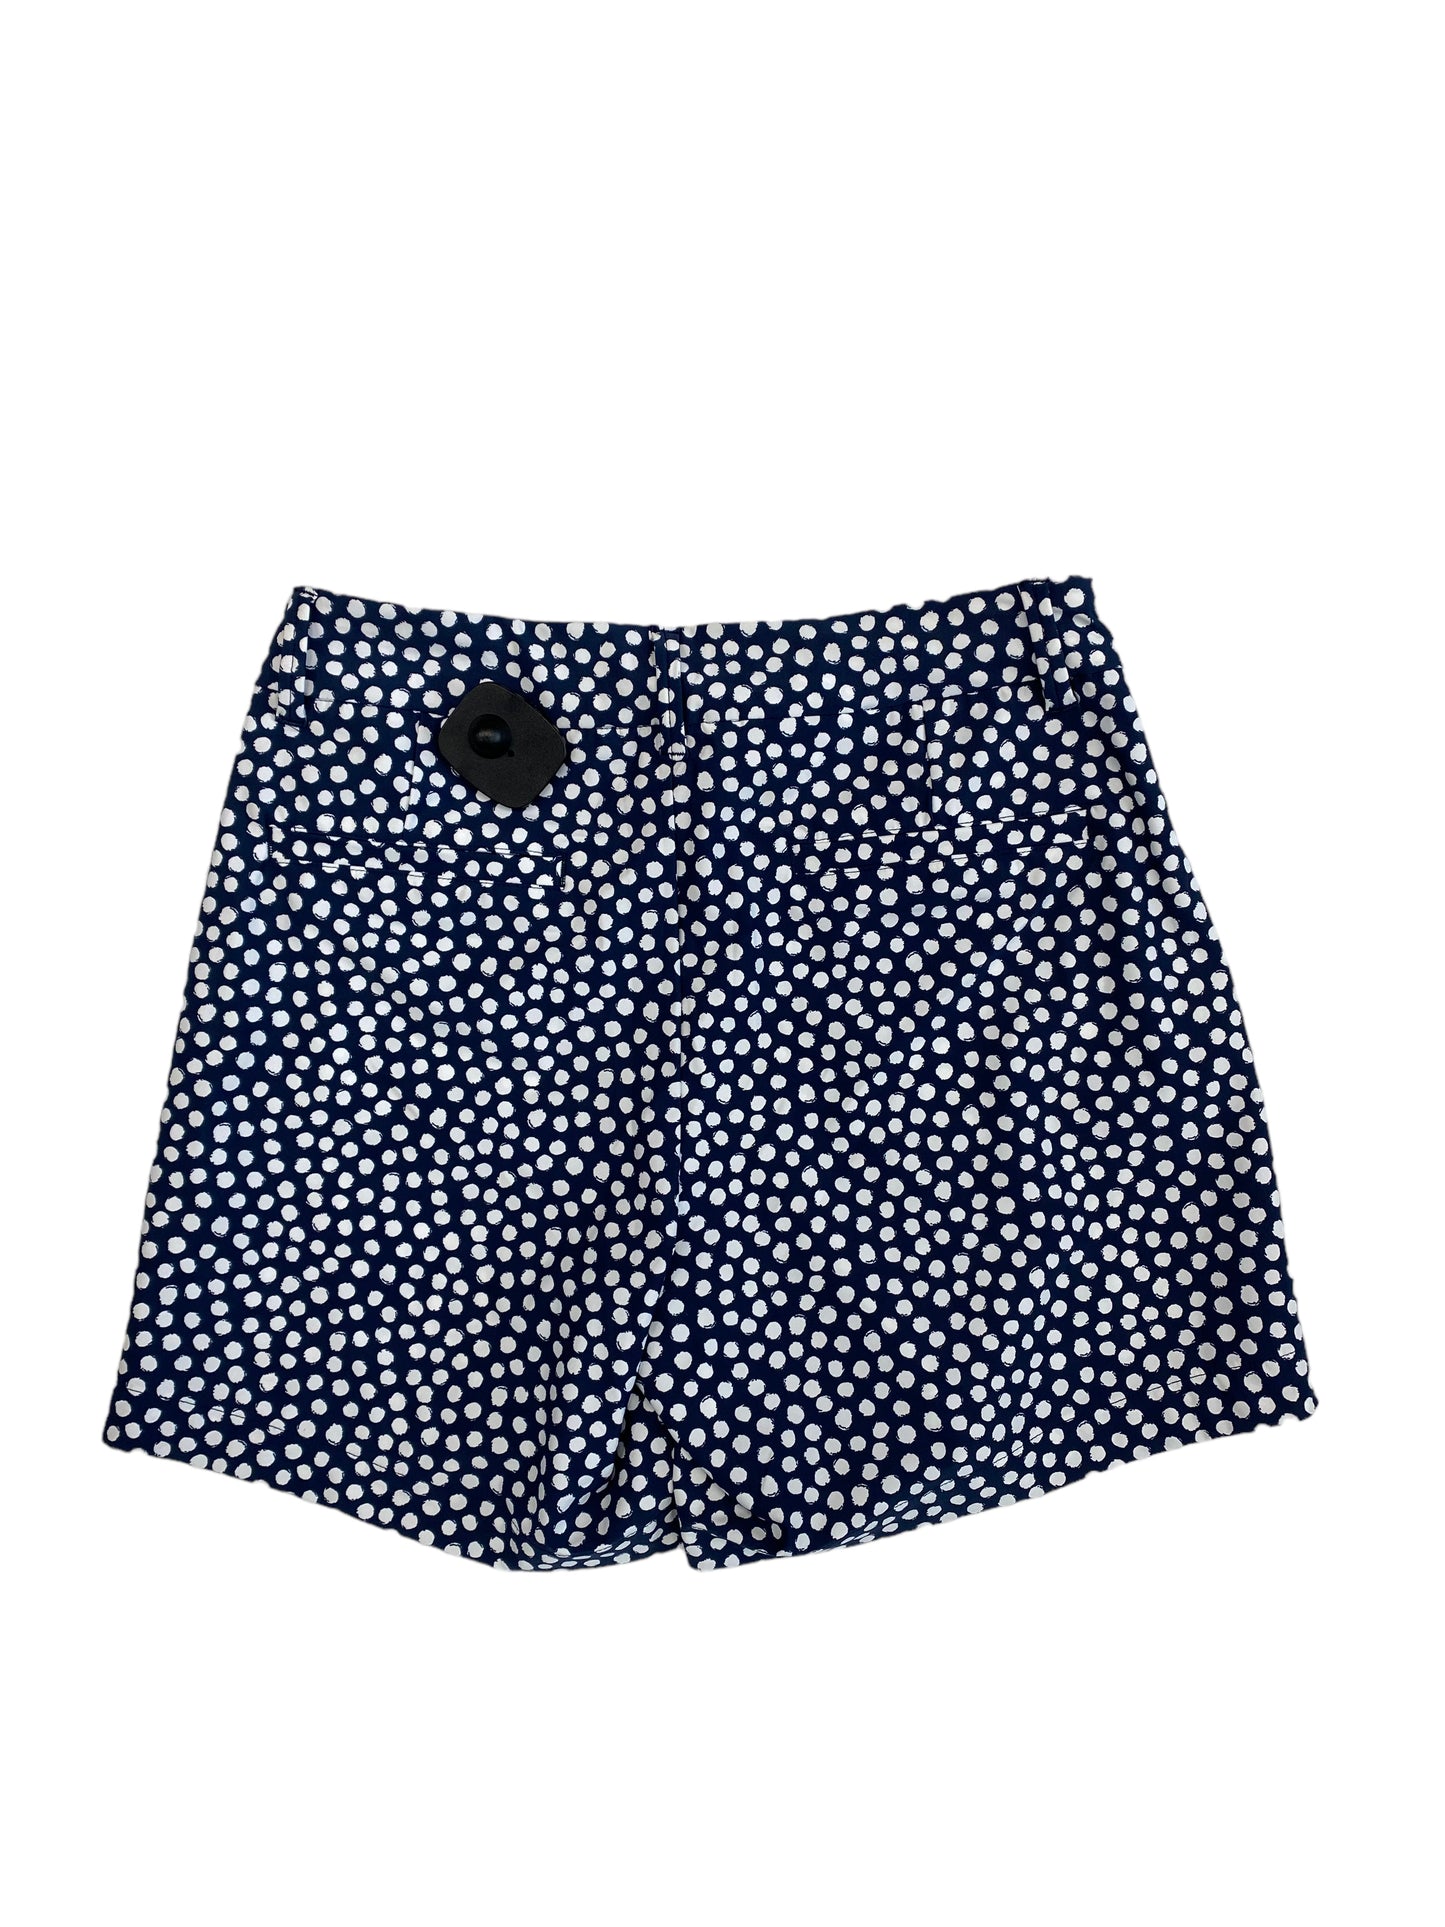 Polkadot Pattern Shorts Spanx, Size Xs